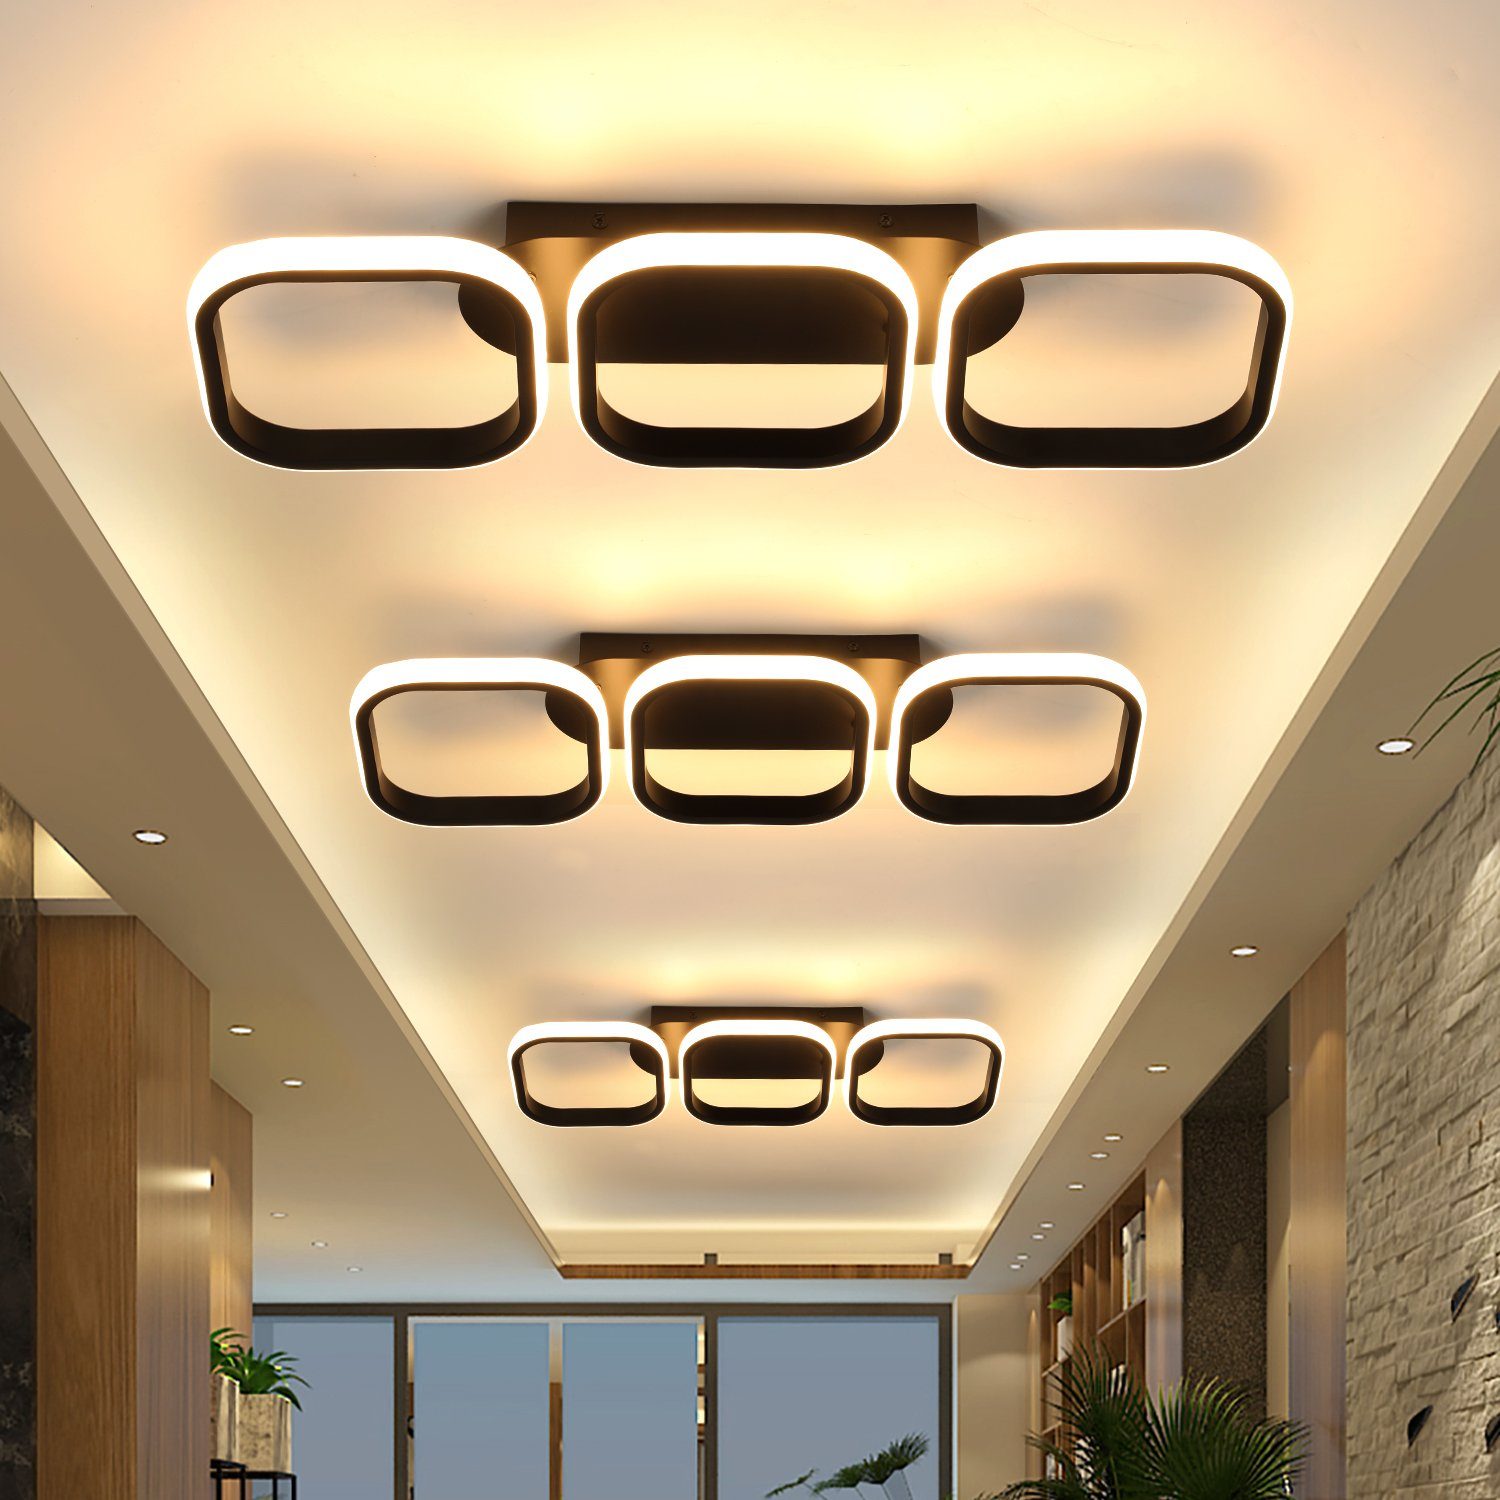 3-Farbige Neutralweiß, Kaltweiß, 3 LED LETGOSPT fest Schwarz Quadrat Deckenlampe 3 Ringe integriert, Warmweiß, Deckenleuchte, Wohnzimmer, Schlafzimmer, LED für Deckenlampe Wandlampe 53cm, Kreative Deckenleuchte Esszimmer, Flur